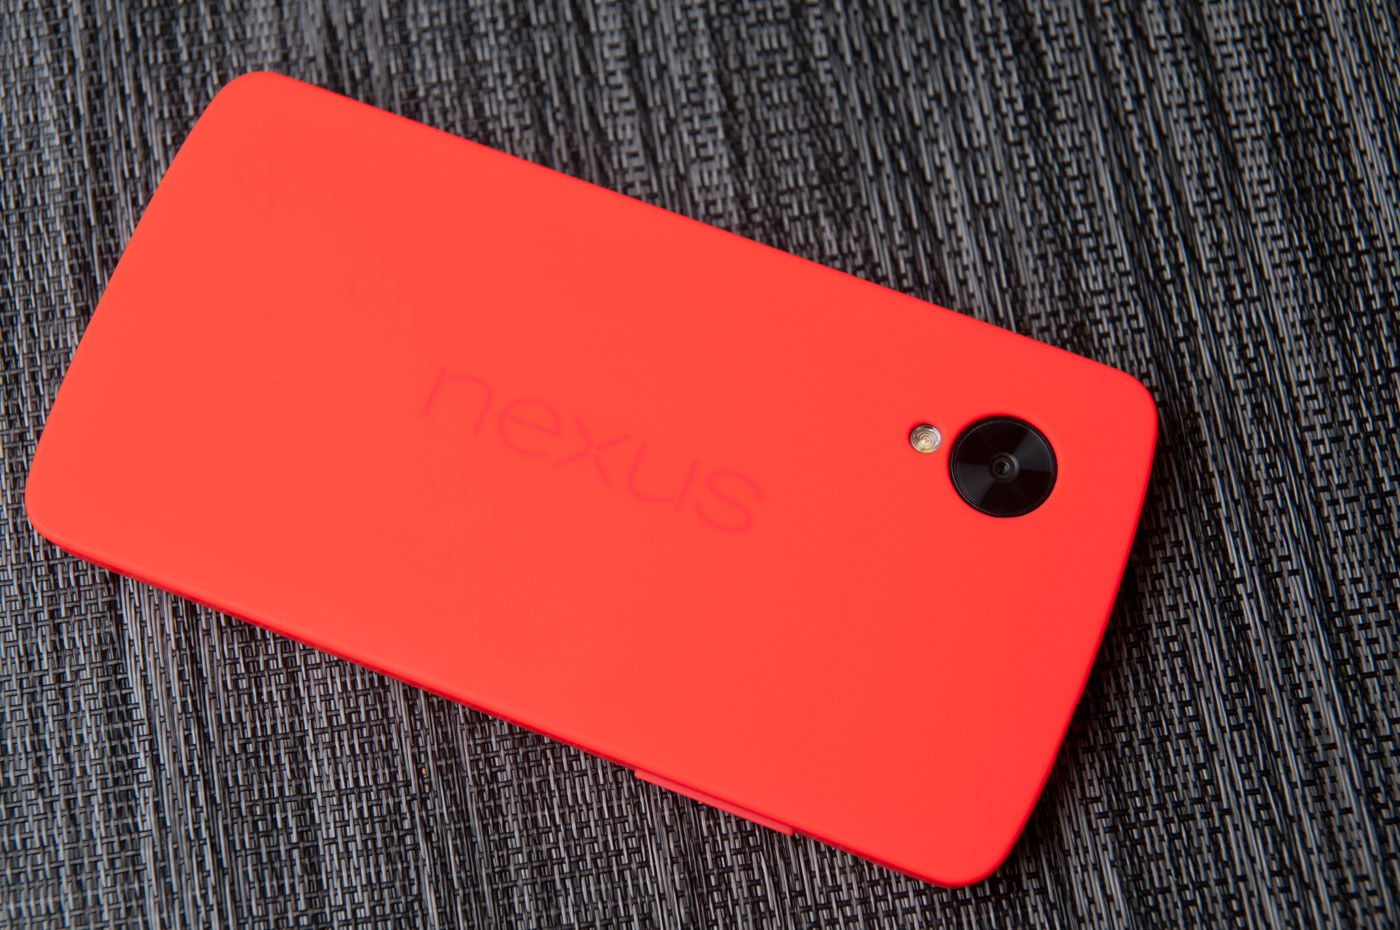 Gevlekt calorie overstroming Google Nexus 5 Review